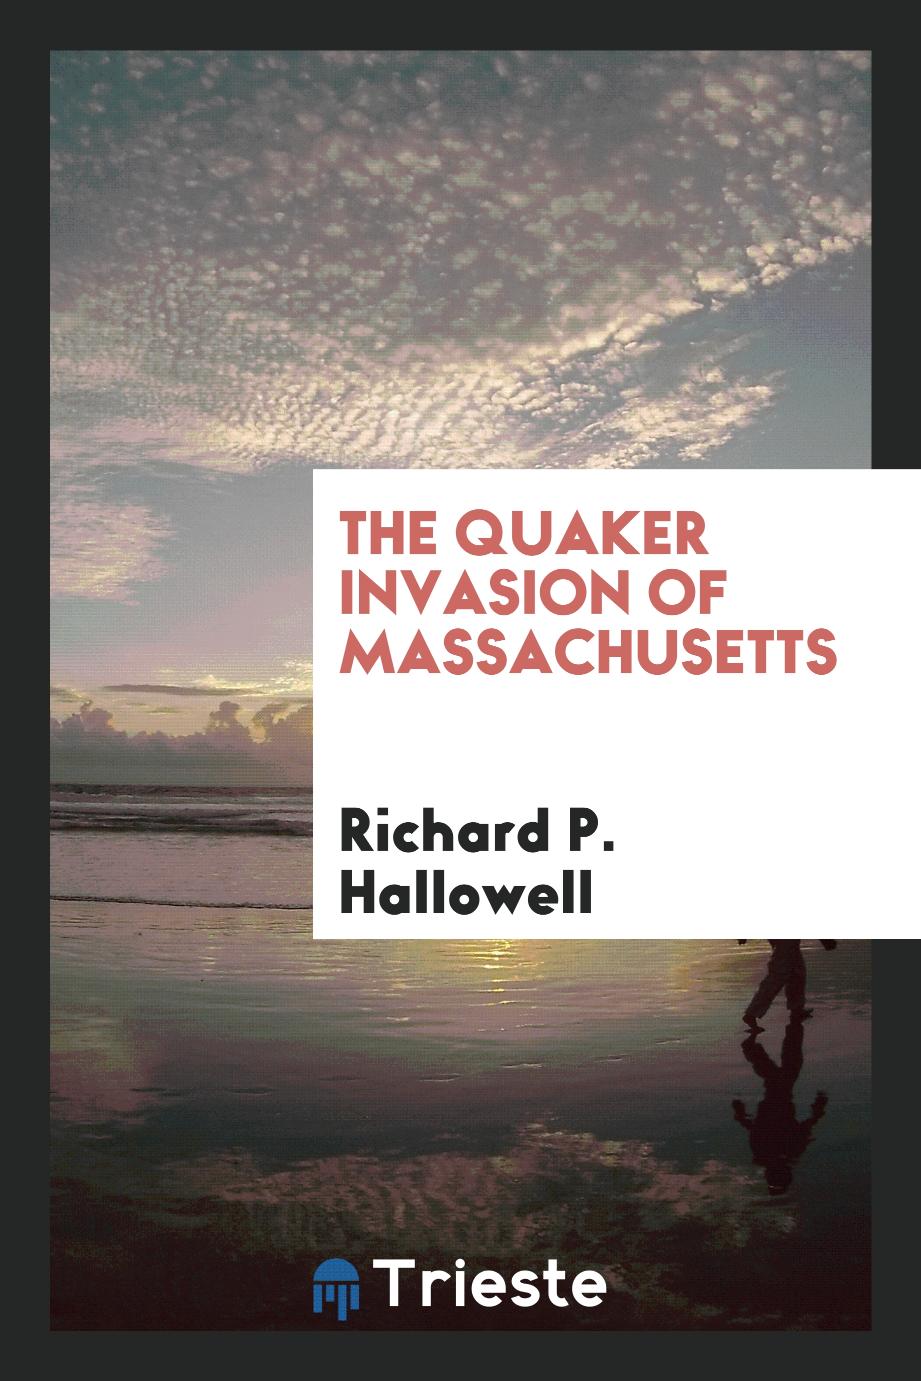 The Quaker invasion of Massachusetts